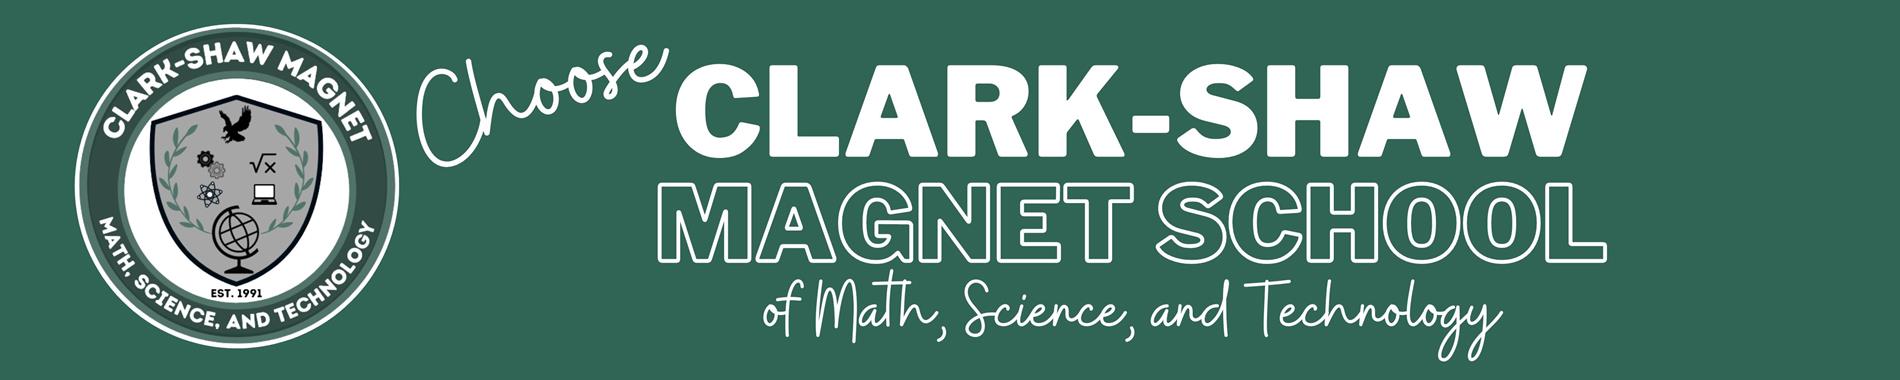 website footer Clark-Shaw Magnet School